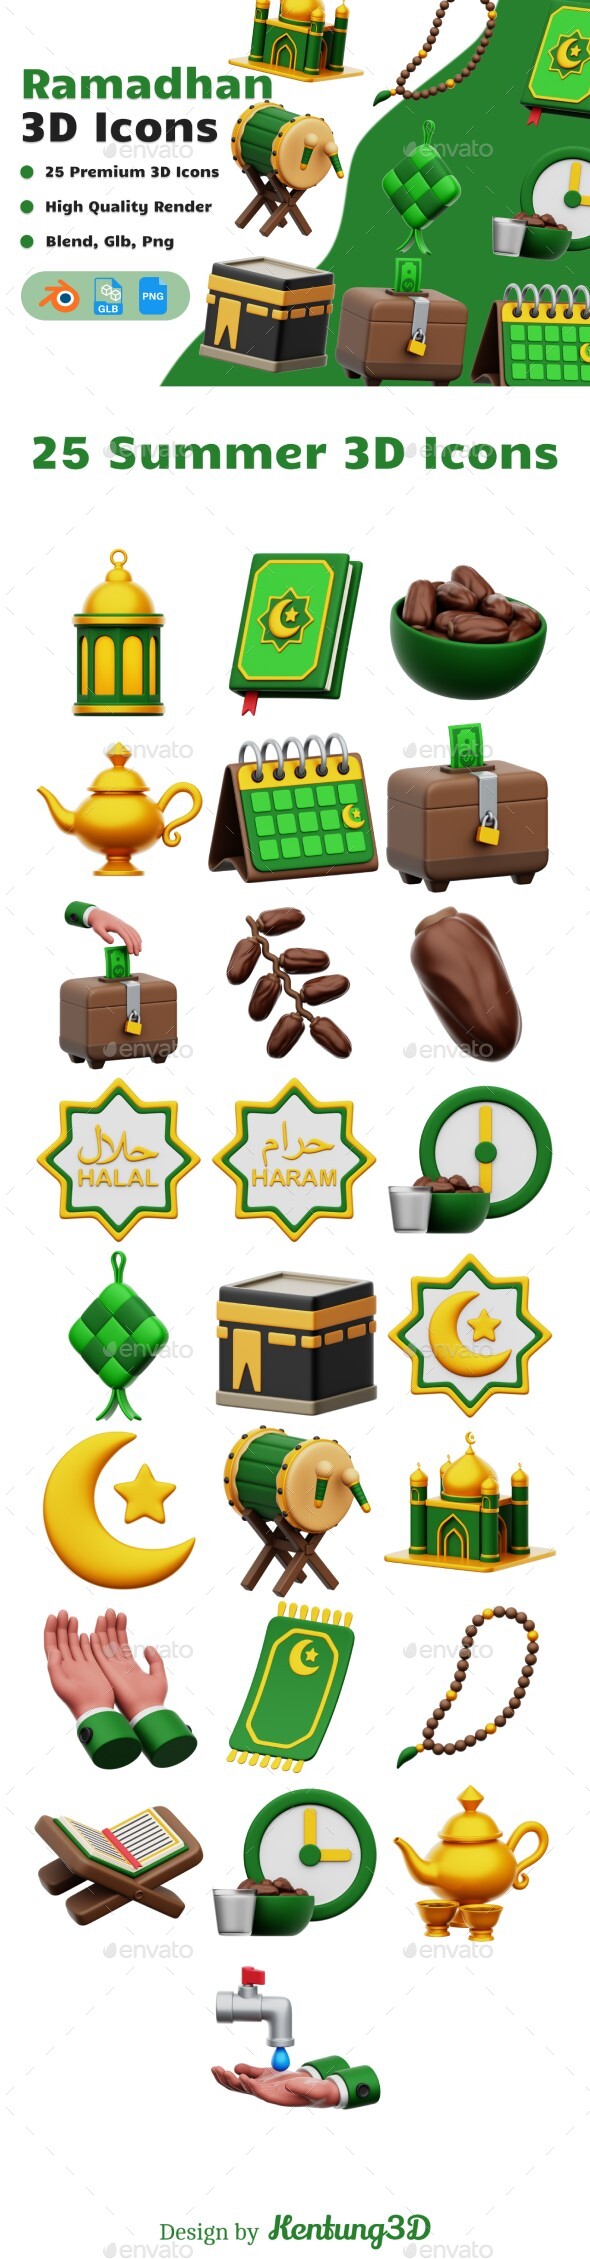 [DOWNLOAD]Ramadhan 3D Icons Set